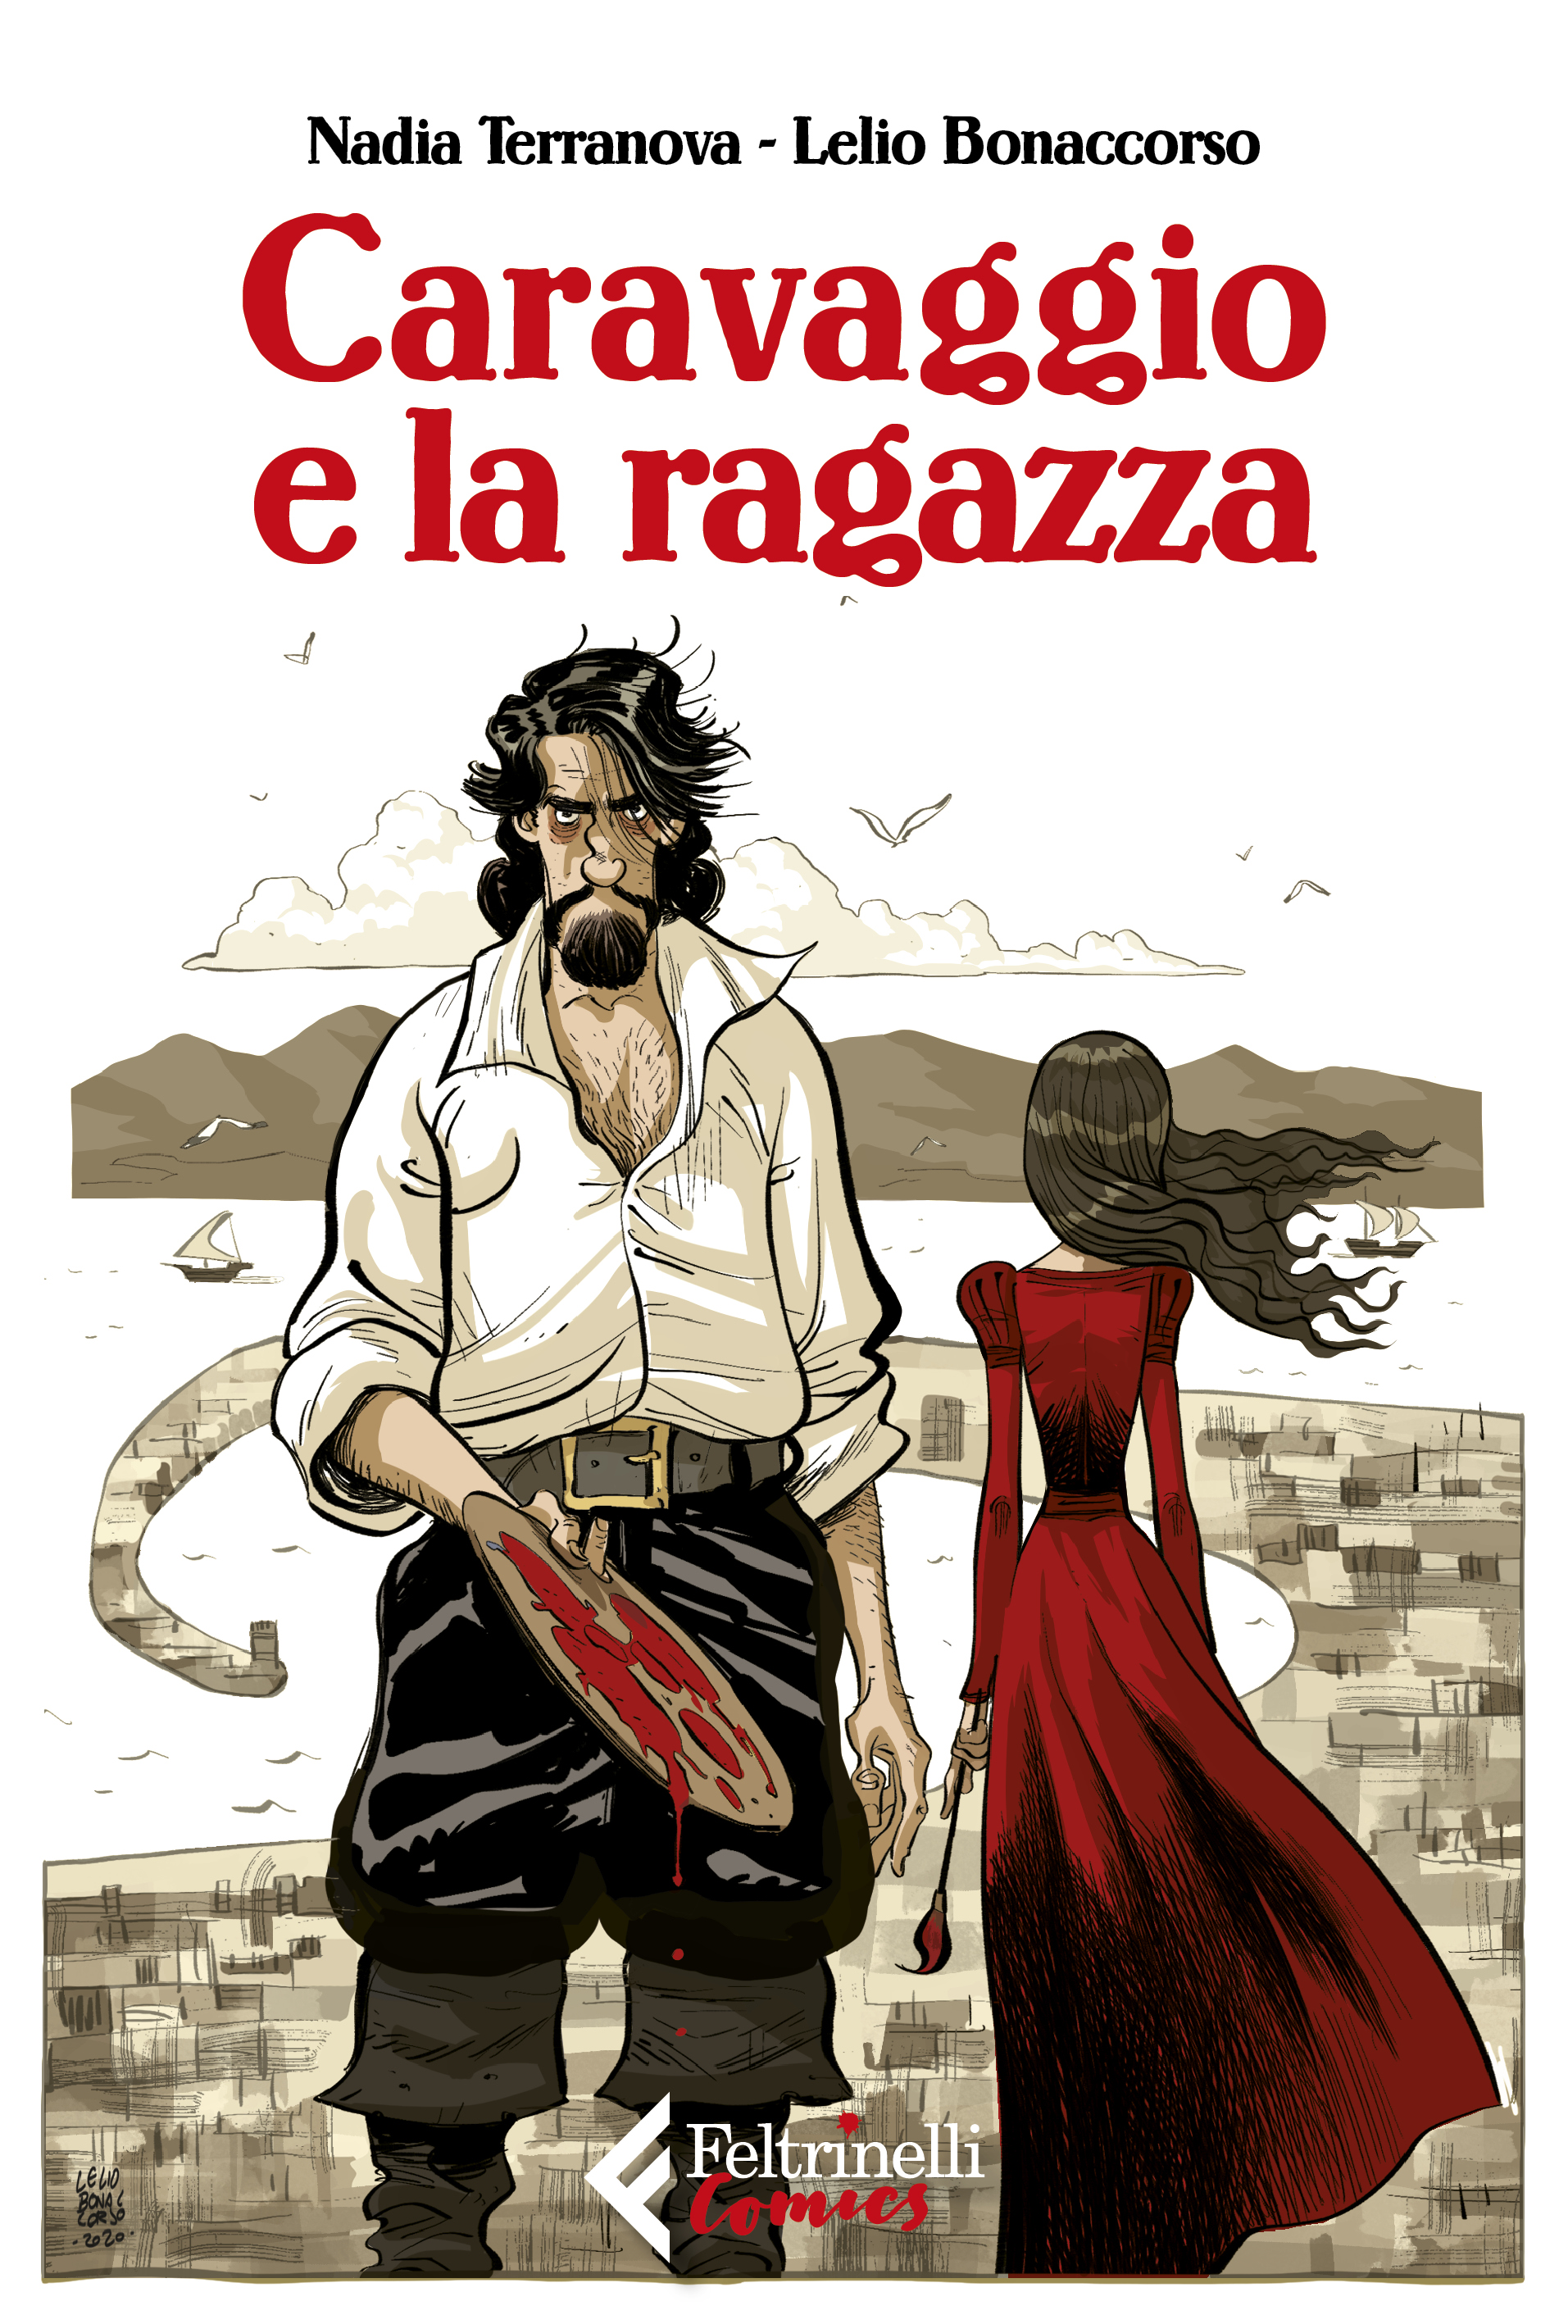 Tratto da "Caravaggio e la ragazza", testi di Nadia Terranova e disegni di Lelio Bonaccorso, Feltrinelli Comics, 2021. (Courtesy Feltrinelli Comics)